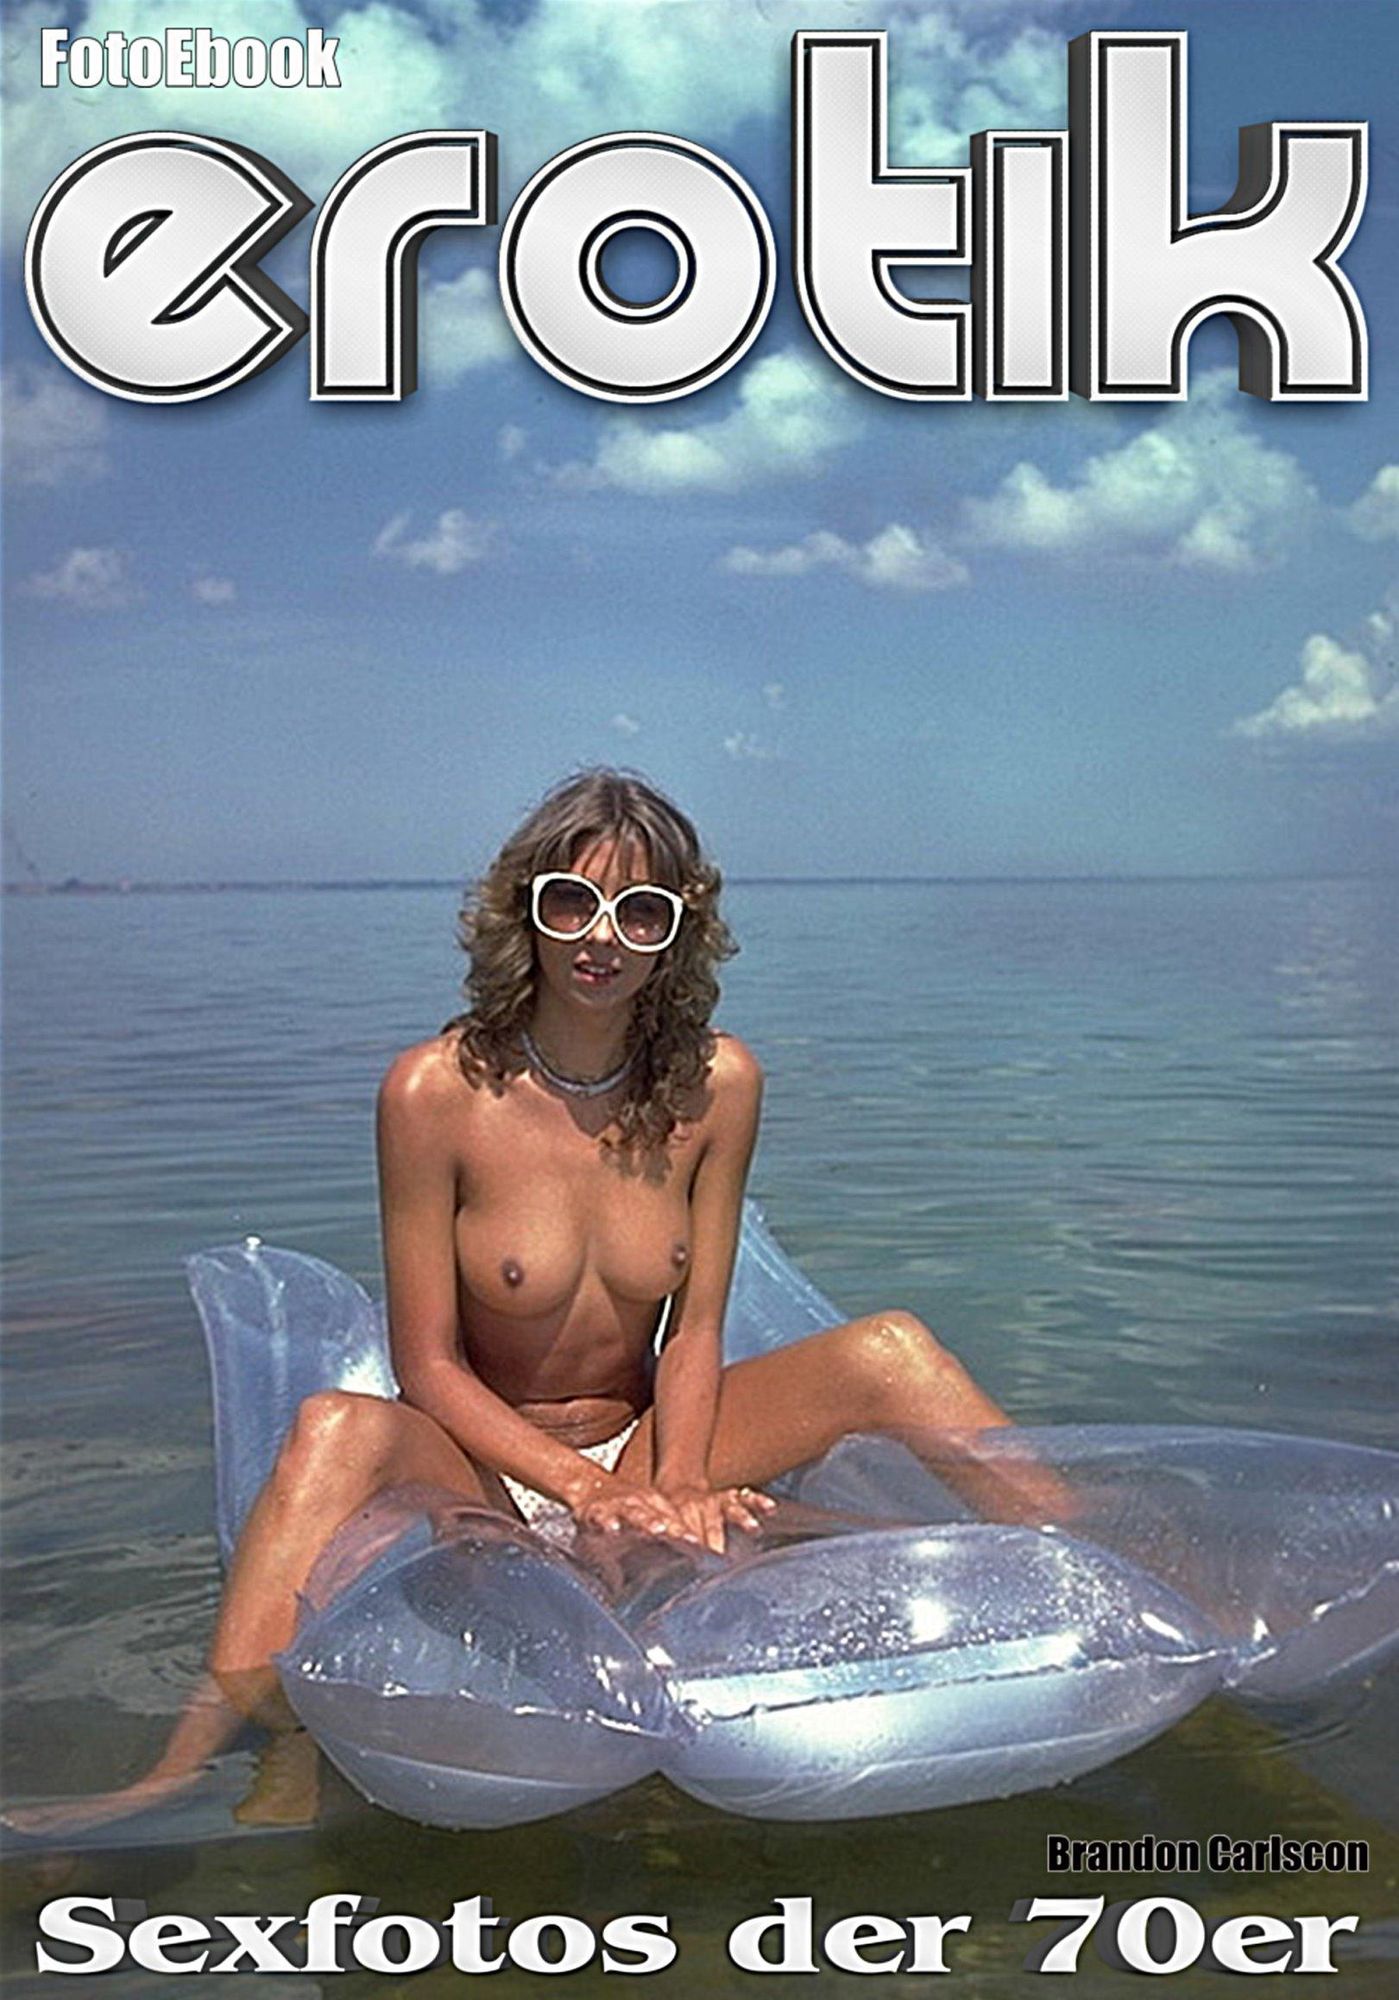 EROTIK - Sexfotos der 70er Jahre 02 von Brandon Carlscon Foto Foto